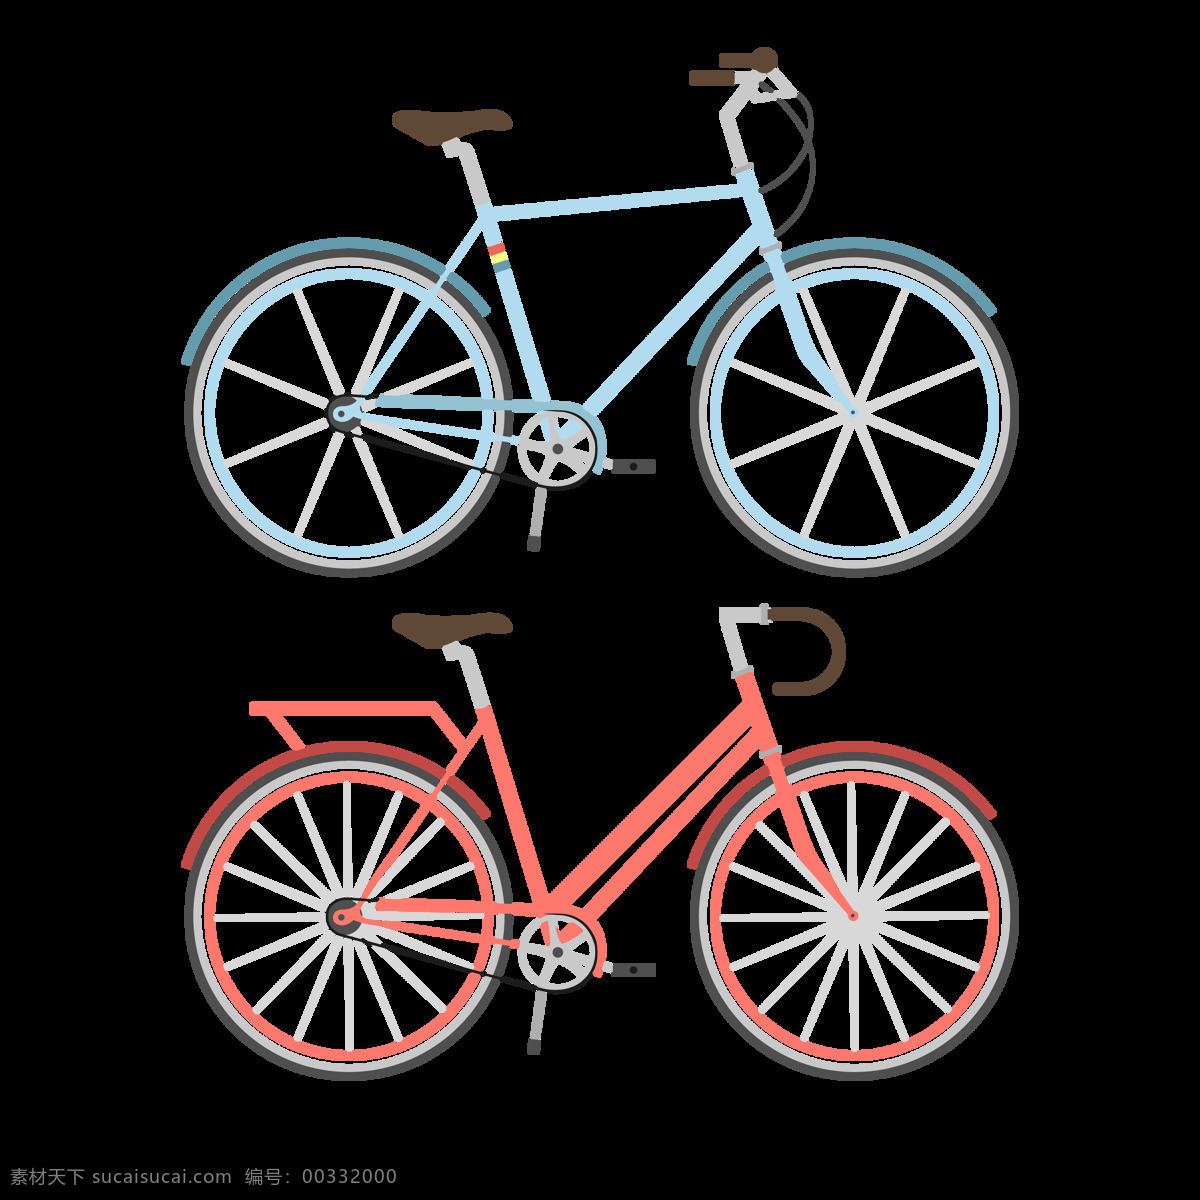 两 种 自行车 插画 免 抠 透明 图 层 共享单车 女式单车 男式单车 电动车 绿色低碳 绿色环保 环保电动车 健身单车 摩拜 ofo单车 小蓝单车 双人单车 多人单车